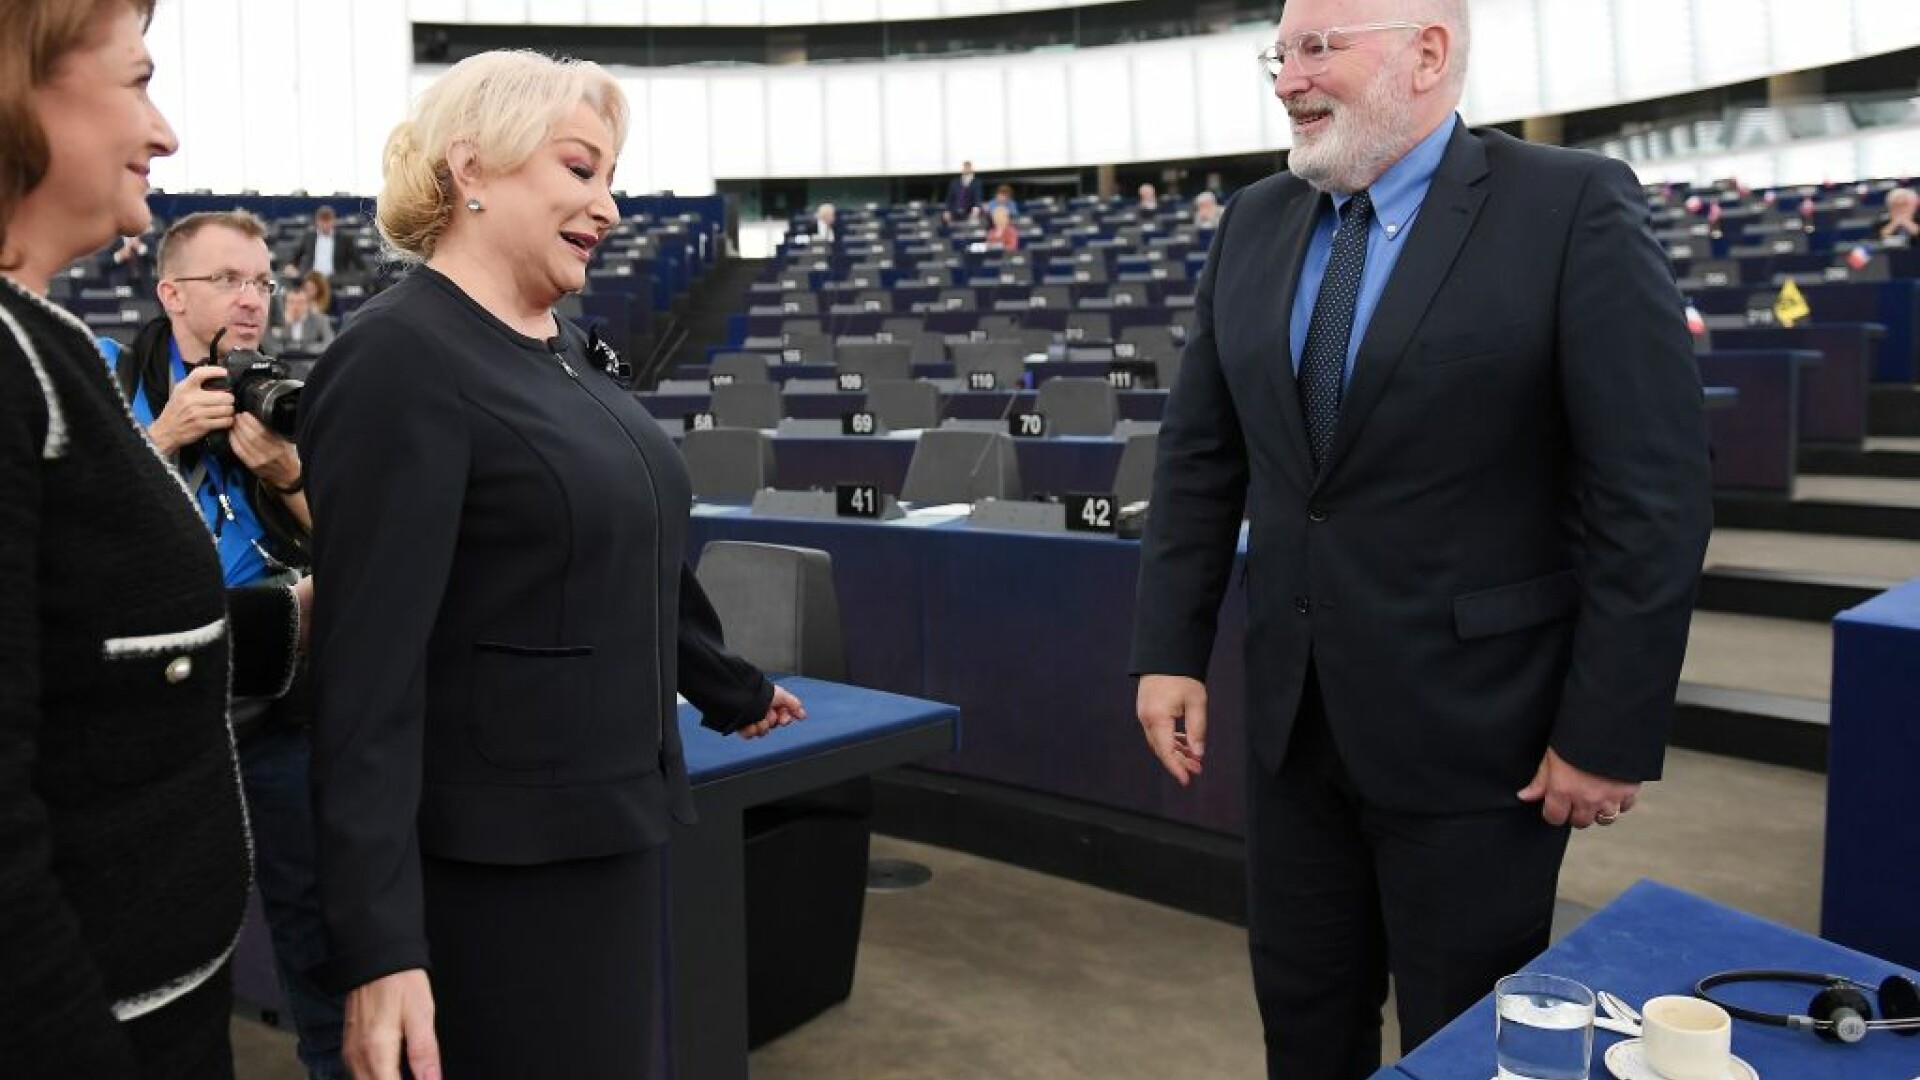 Viorica Dancila si Frank Timmermans in Parlamentul European